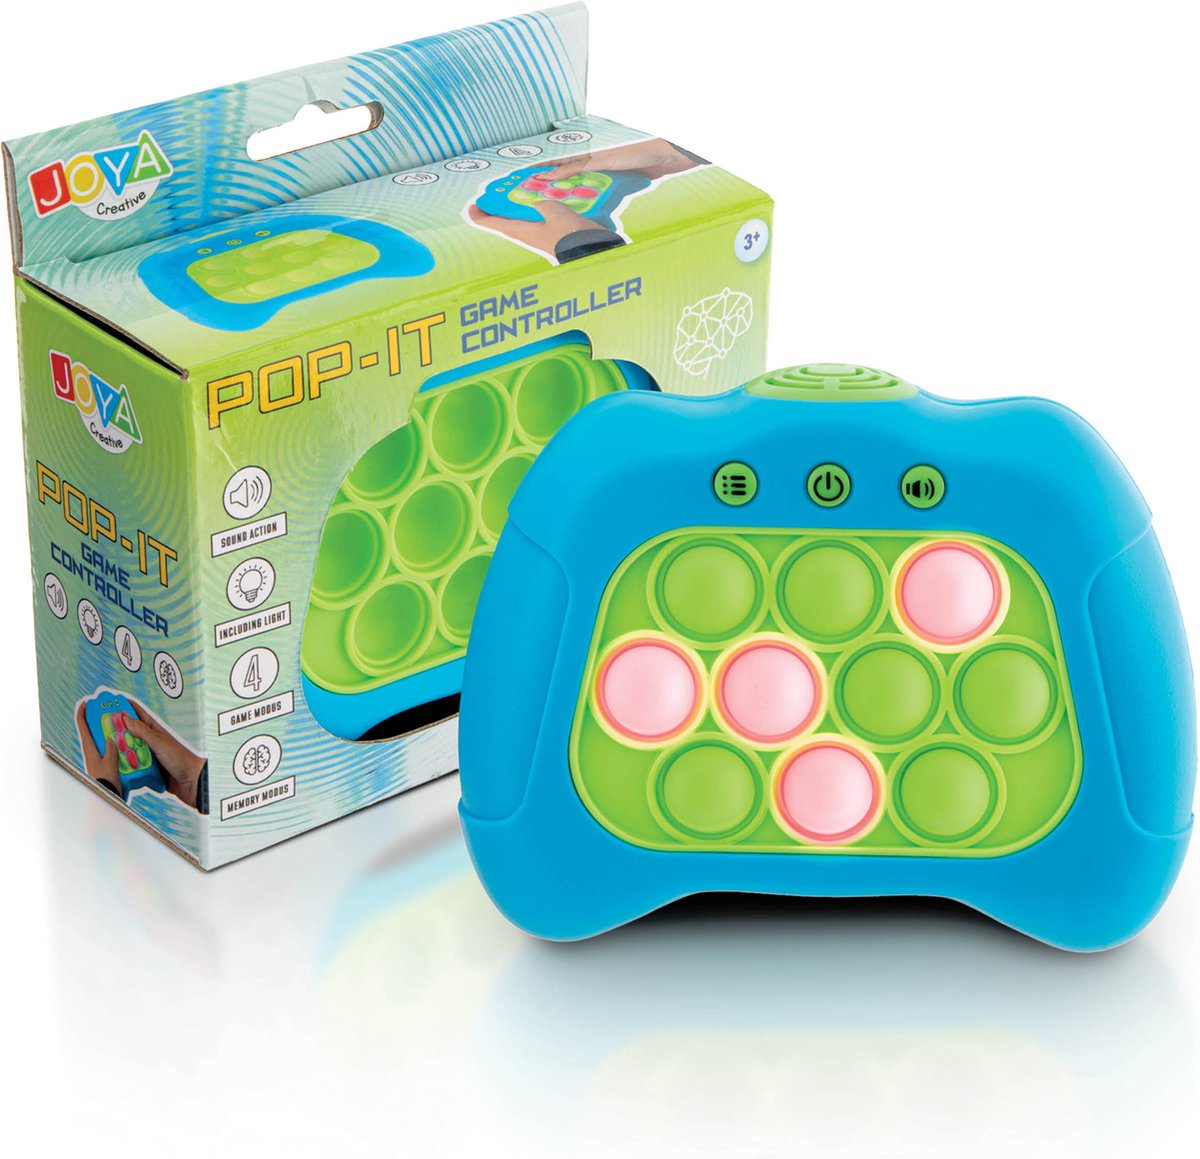 JOYA CREATIVE Pop It Spel Game Controller Fidget Toy Quick Push Montessori Speelgoed Anti Stress Speelgoed Inclusief Licht en Geluidseffecten